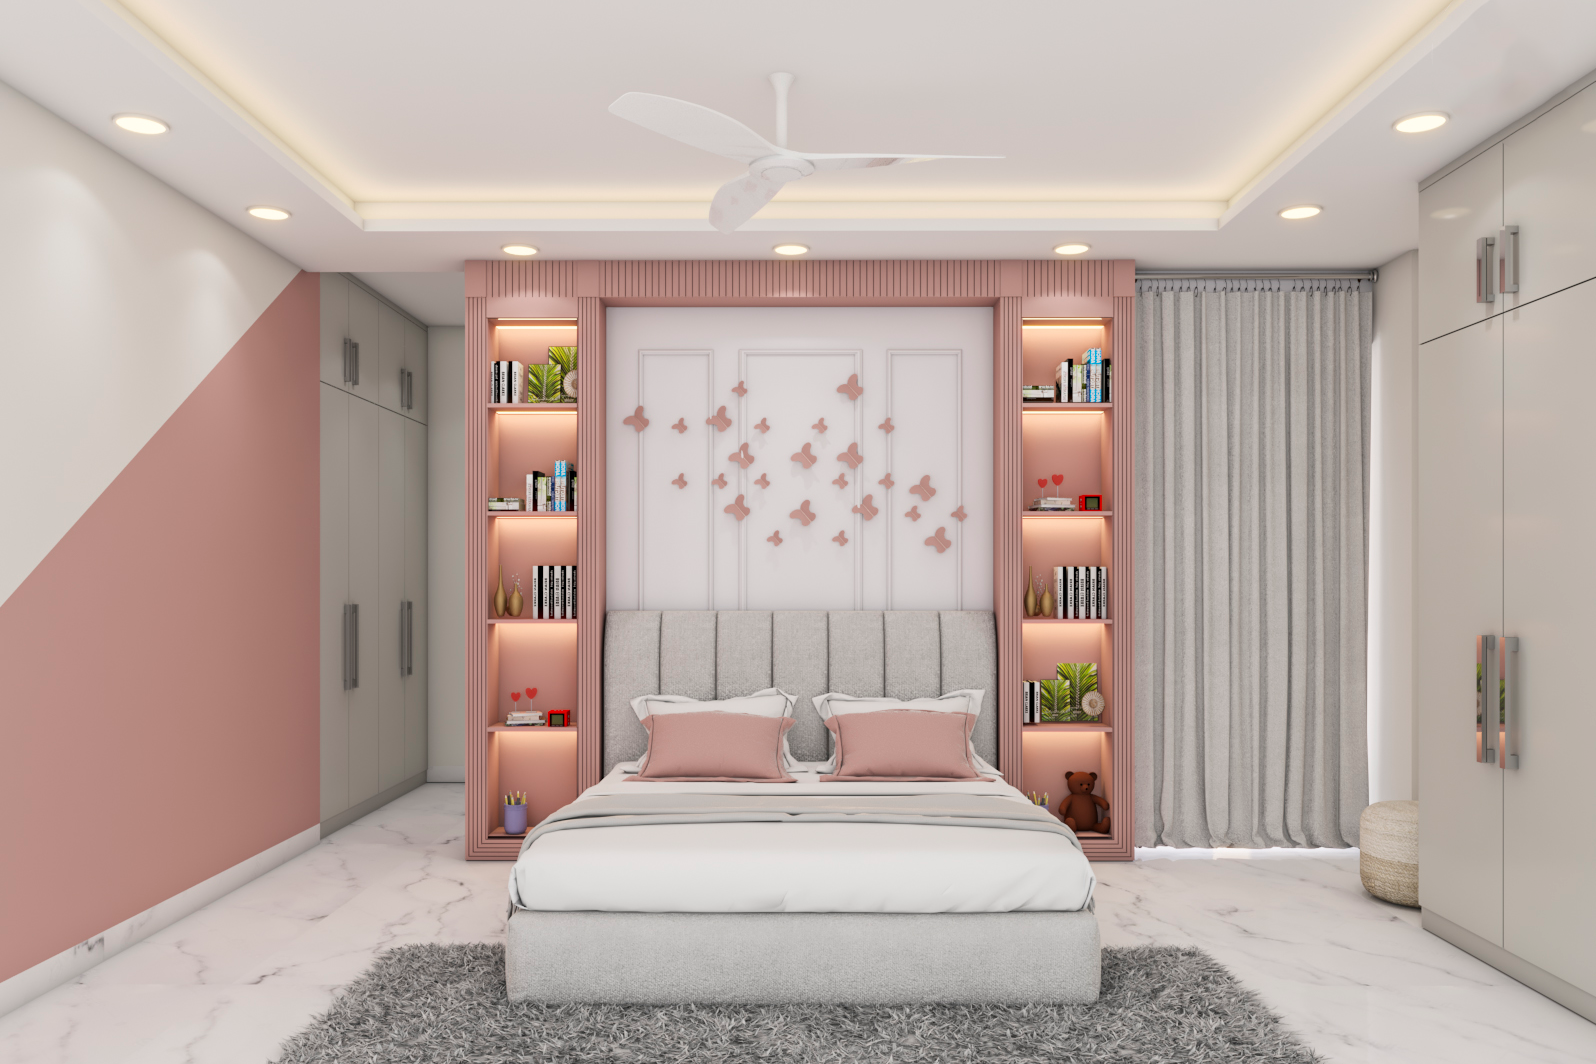 Rectangular White Ceiling Design For Modern Bedrooms